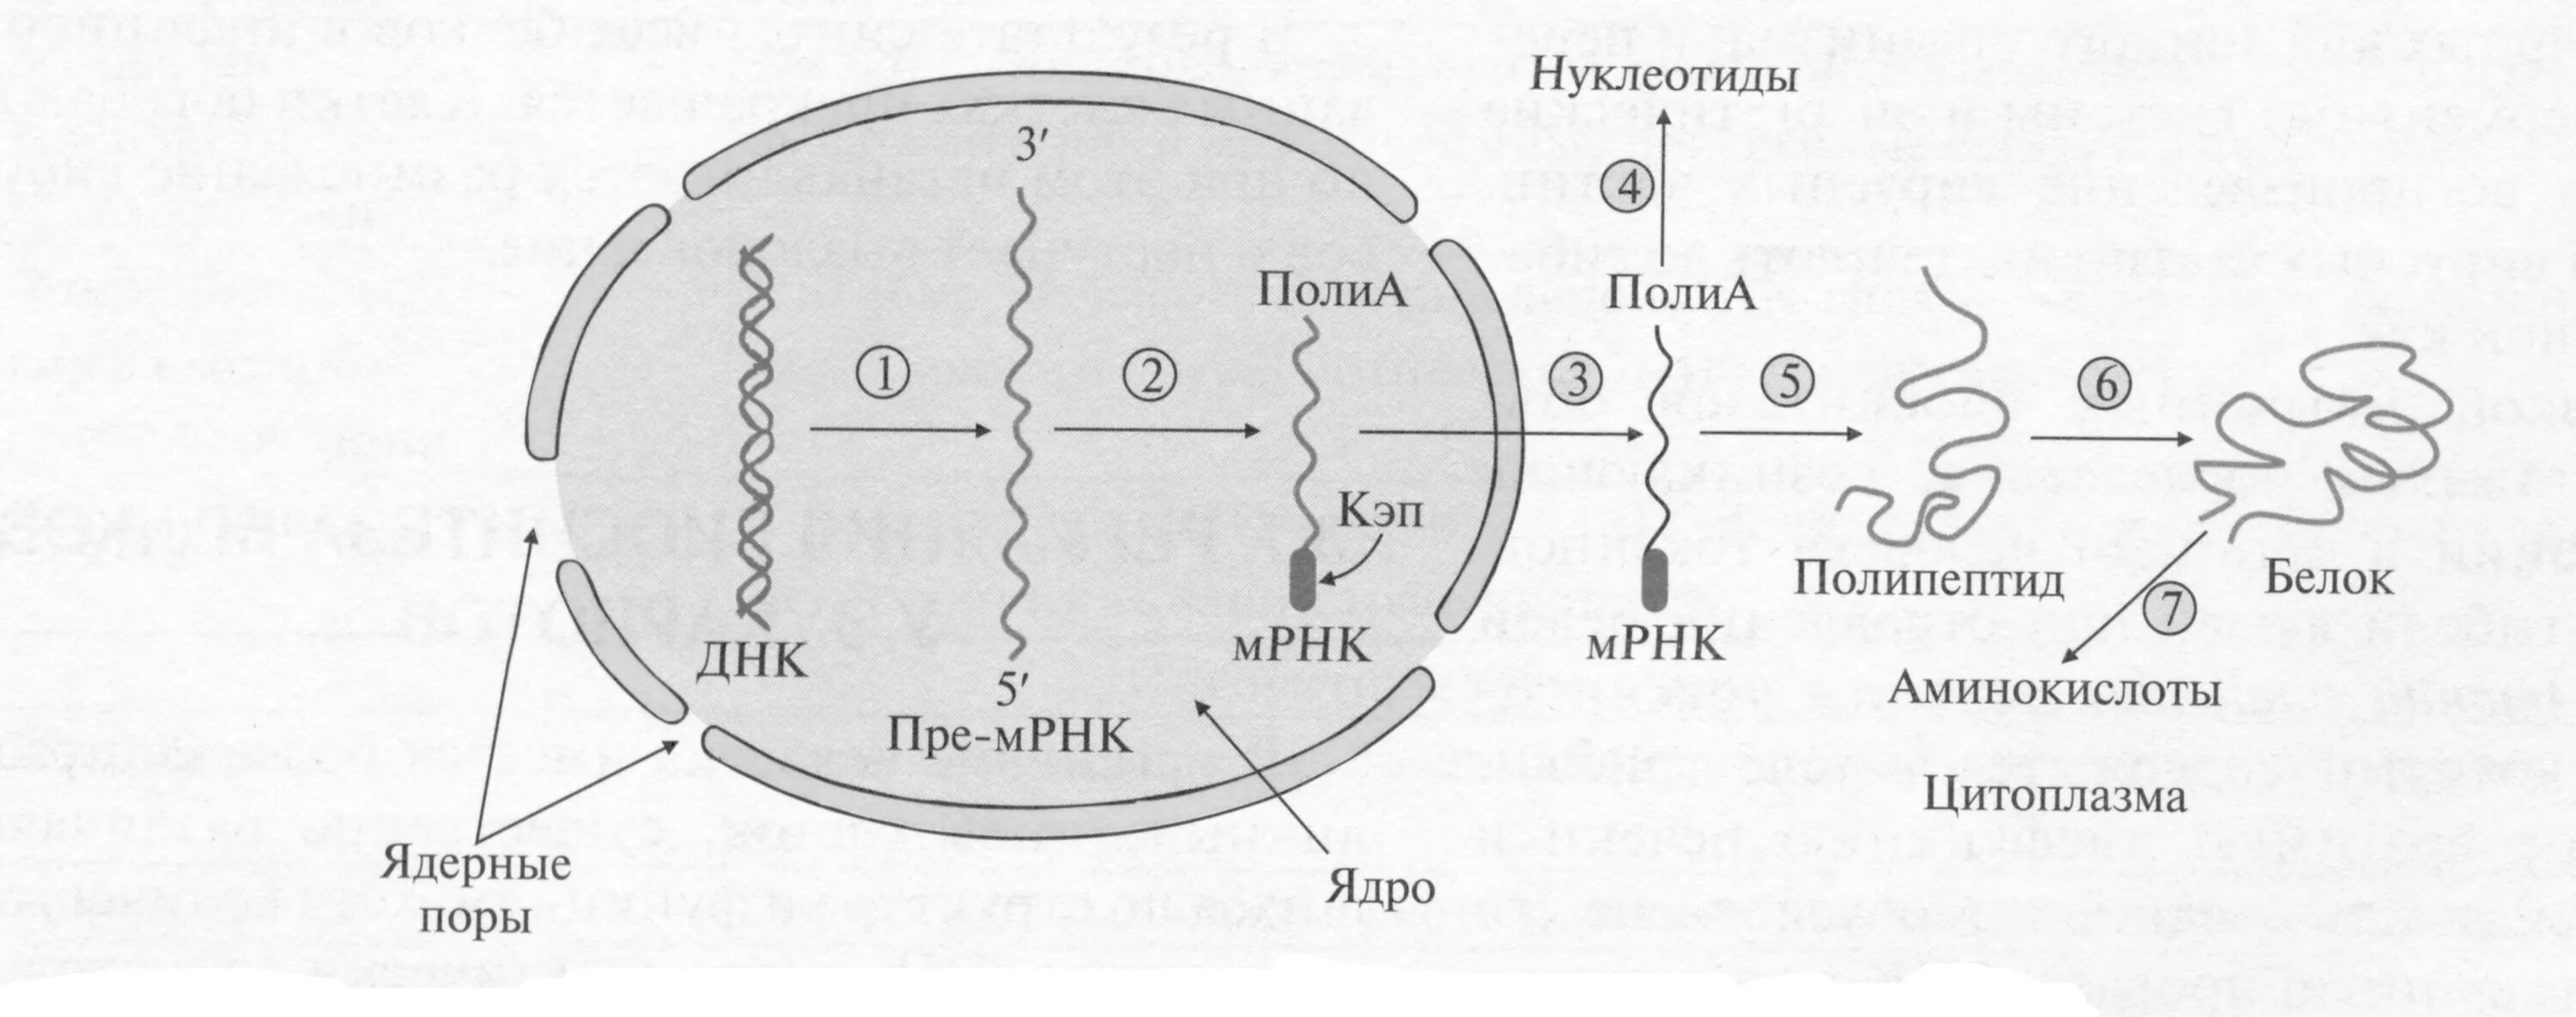 Биосинтез белка эукариот. Схема синтеза белка эукариот. Биосинтез белка схема с МРНК. Синтез белка у эукариот.